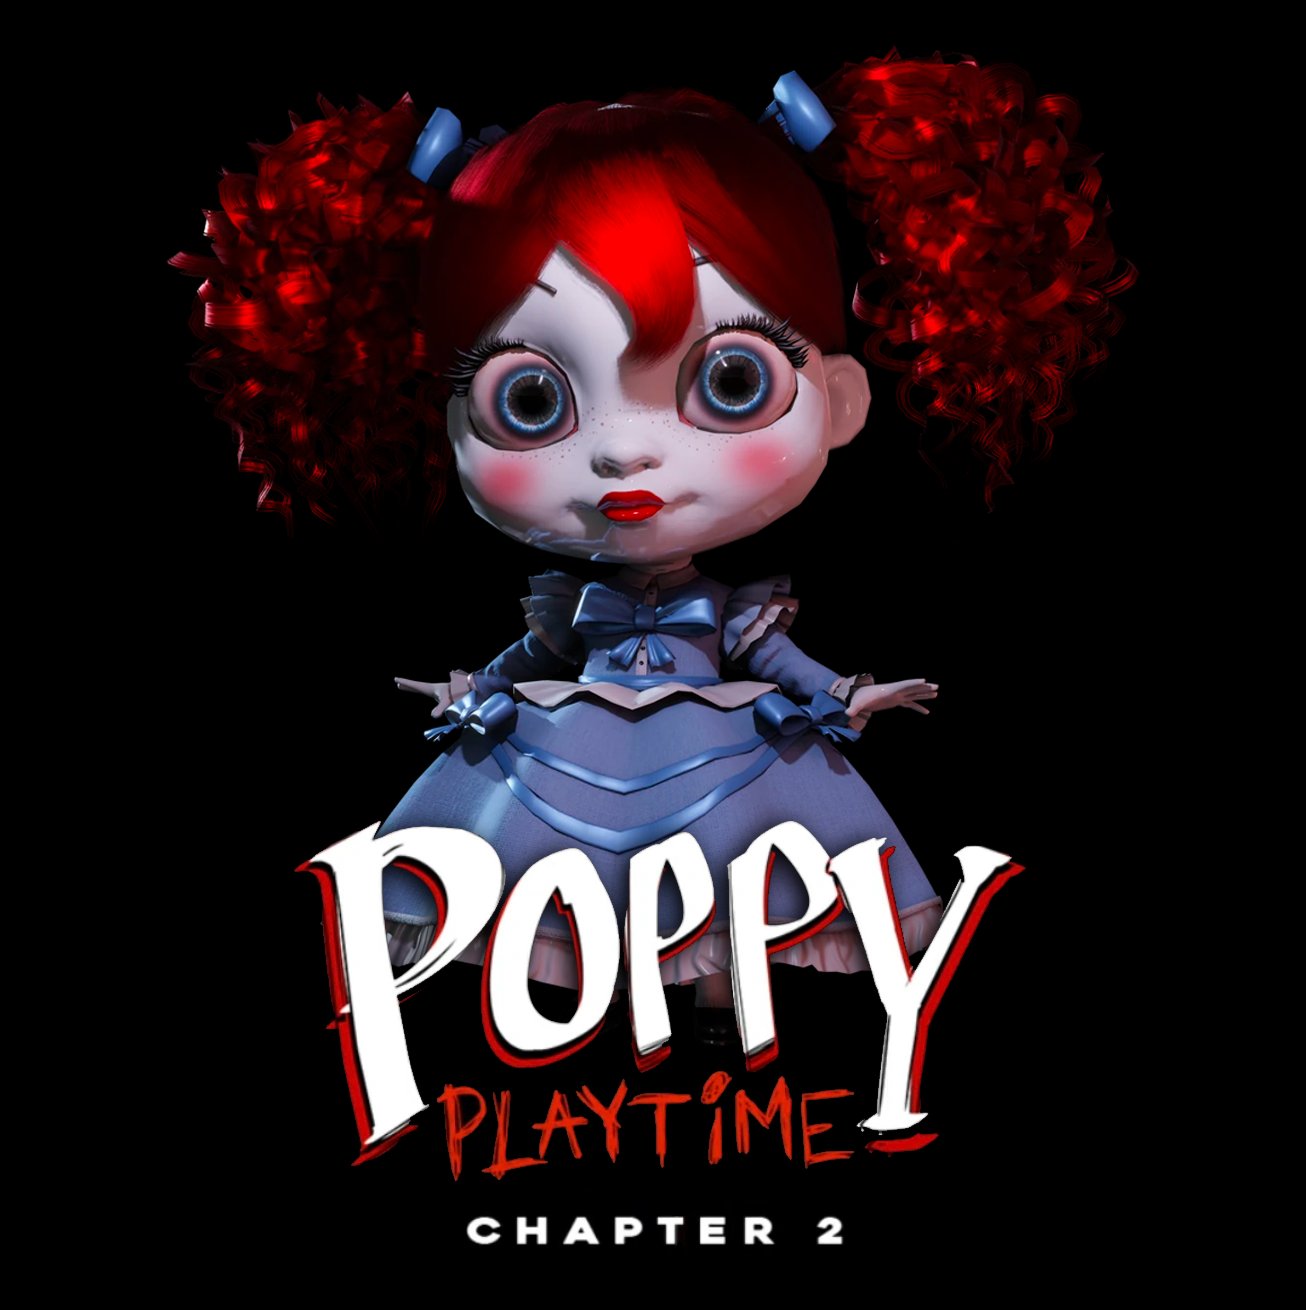 POPPY PLAYTIME CHAPTER 2 - DATA DE LANÇAMENTO! #poppyplaytime